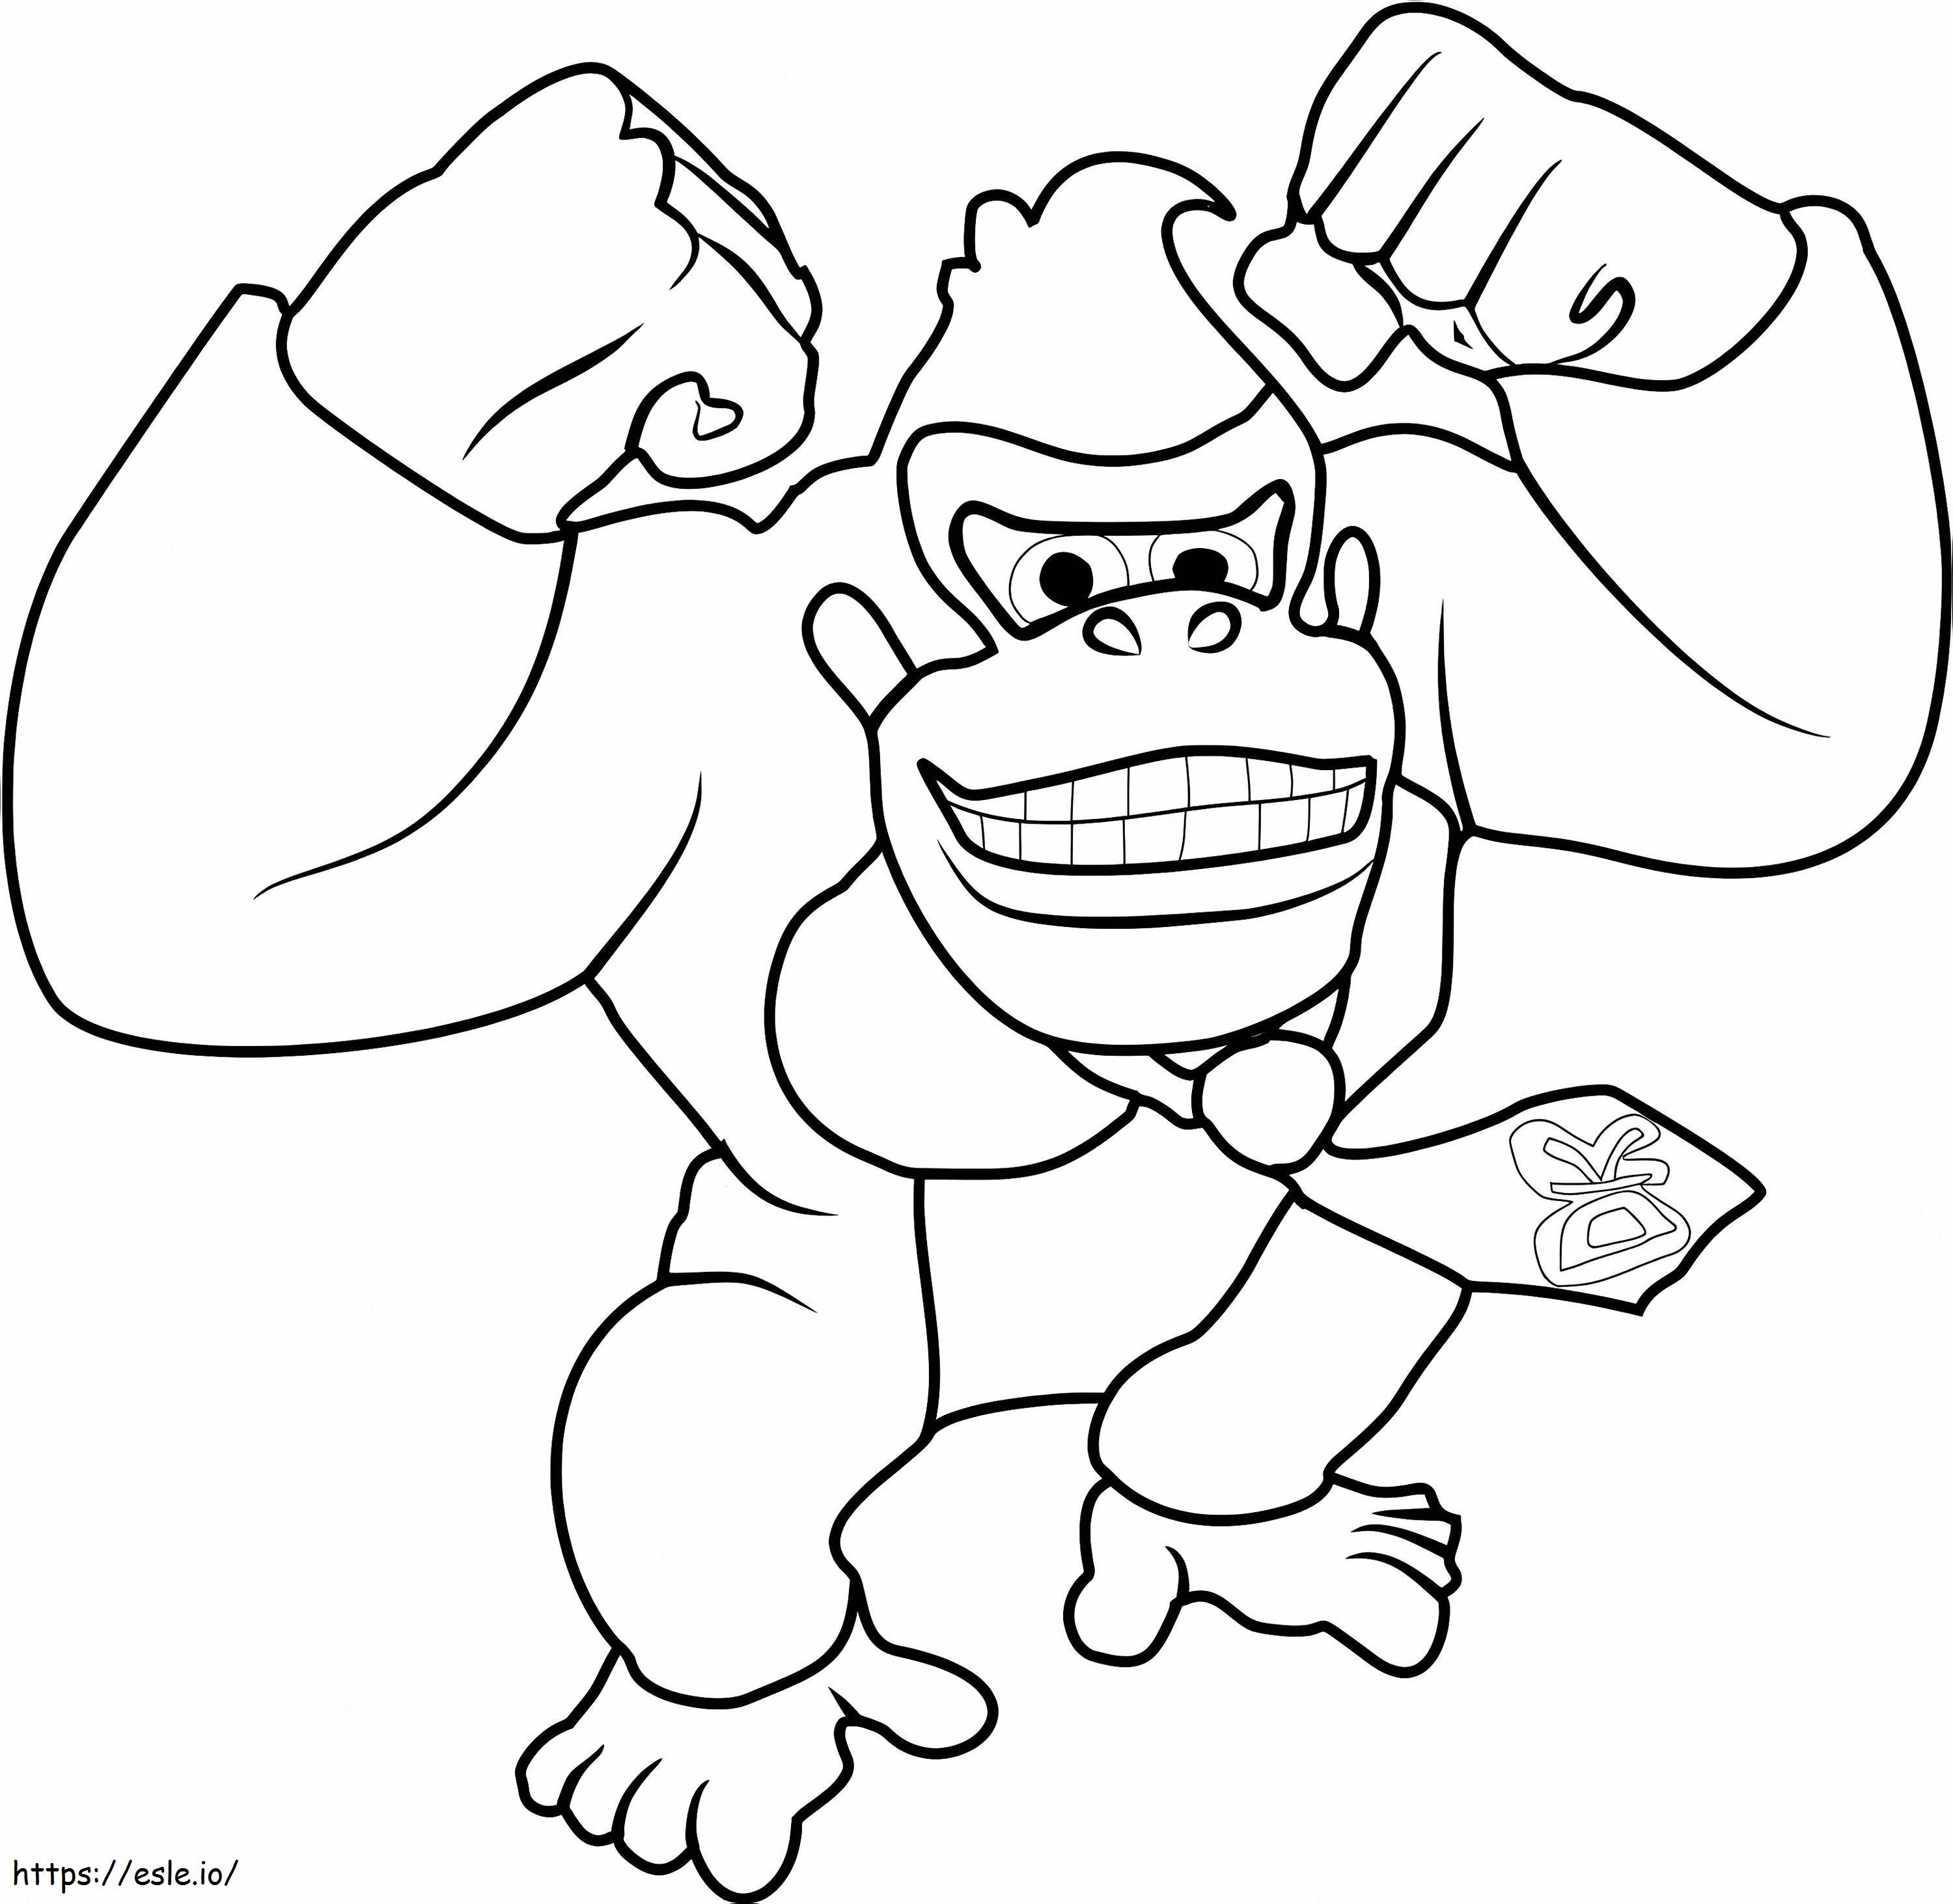 Super Mario Donkey Kong coloring page